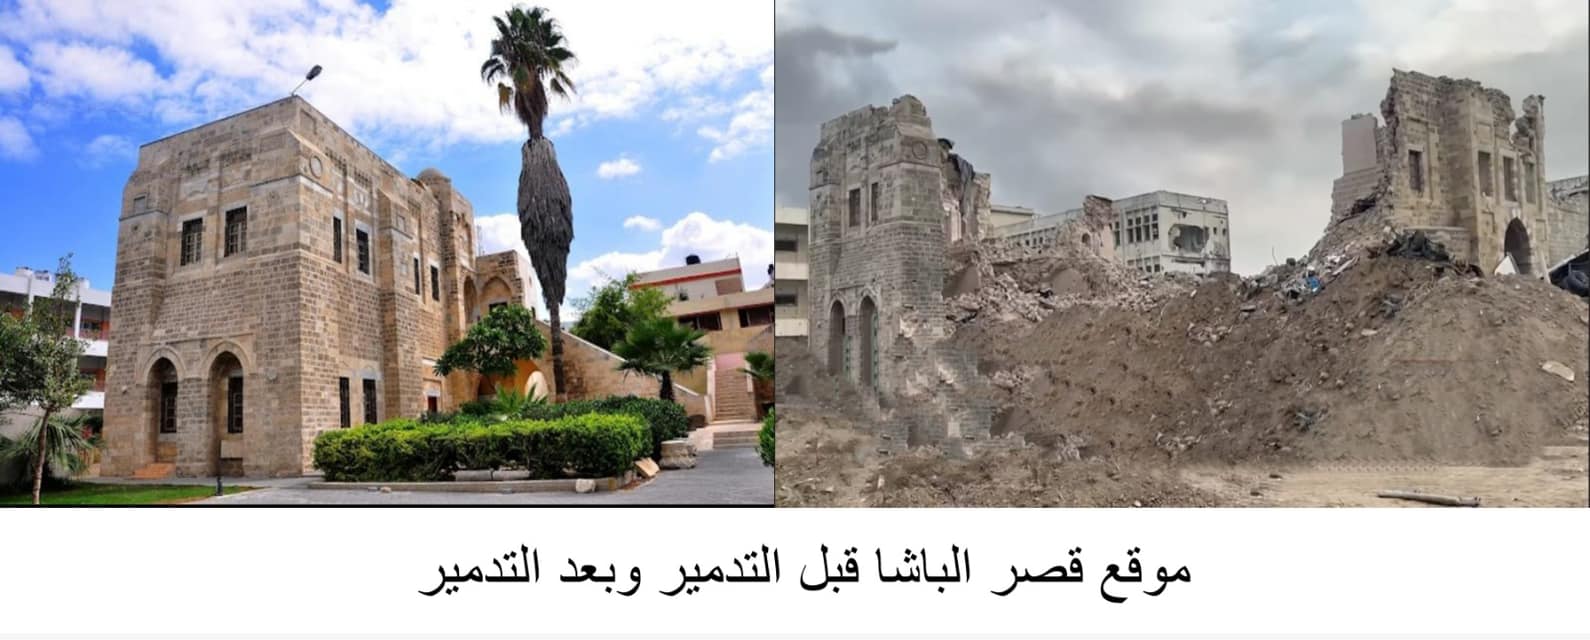 وزارة السياحة والآثار تدين تدمير الاحتلال قصر الباشا في حي الدرج بالمركز التاريخي لمدينة غزة